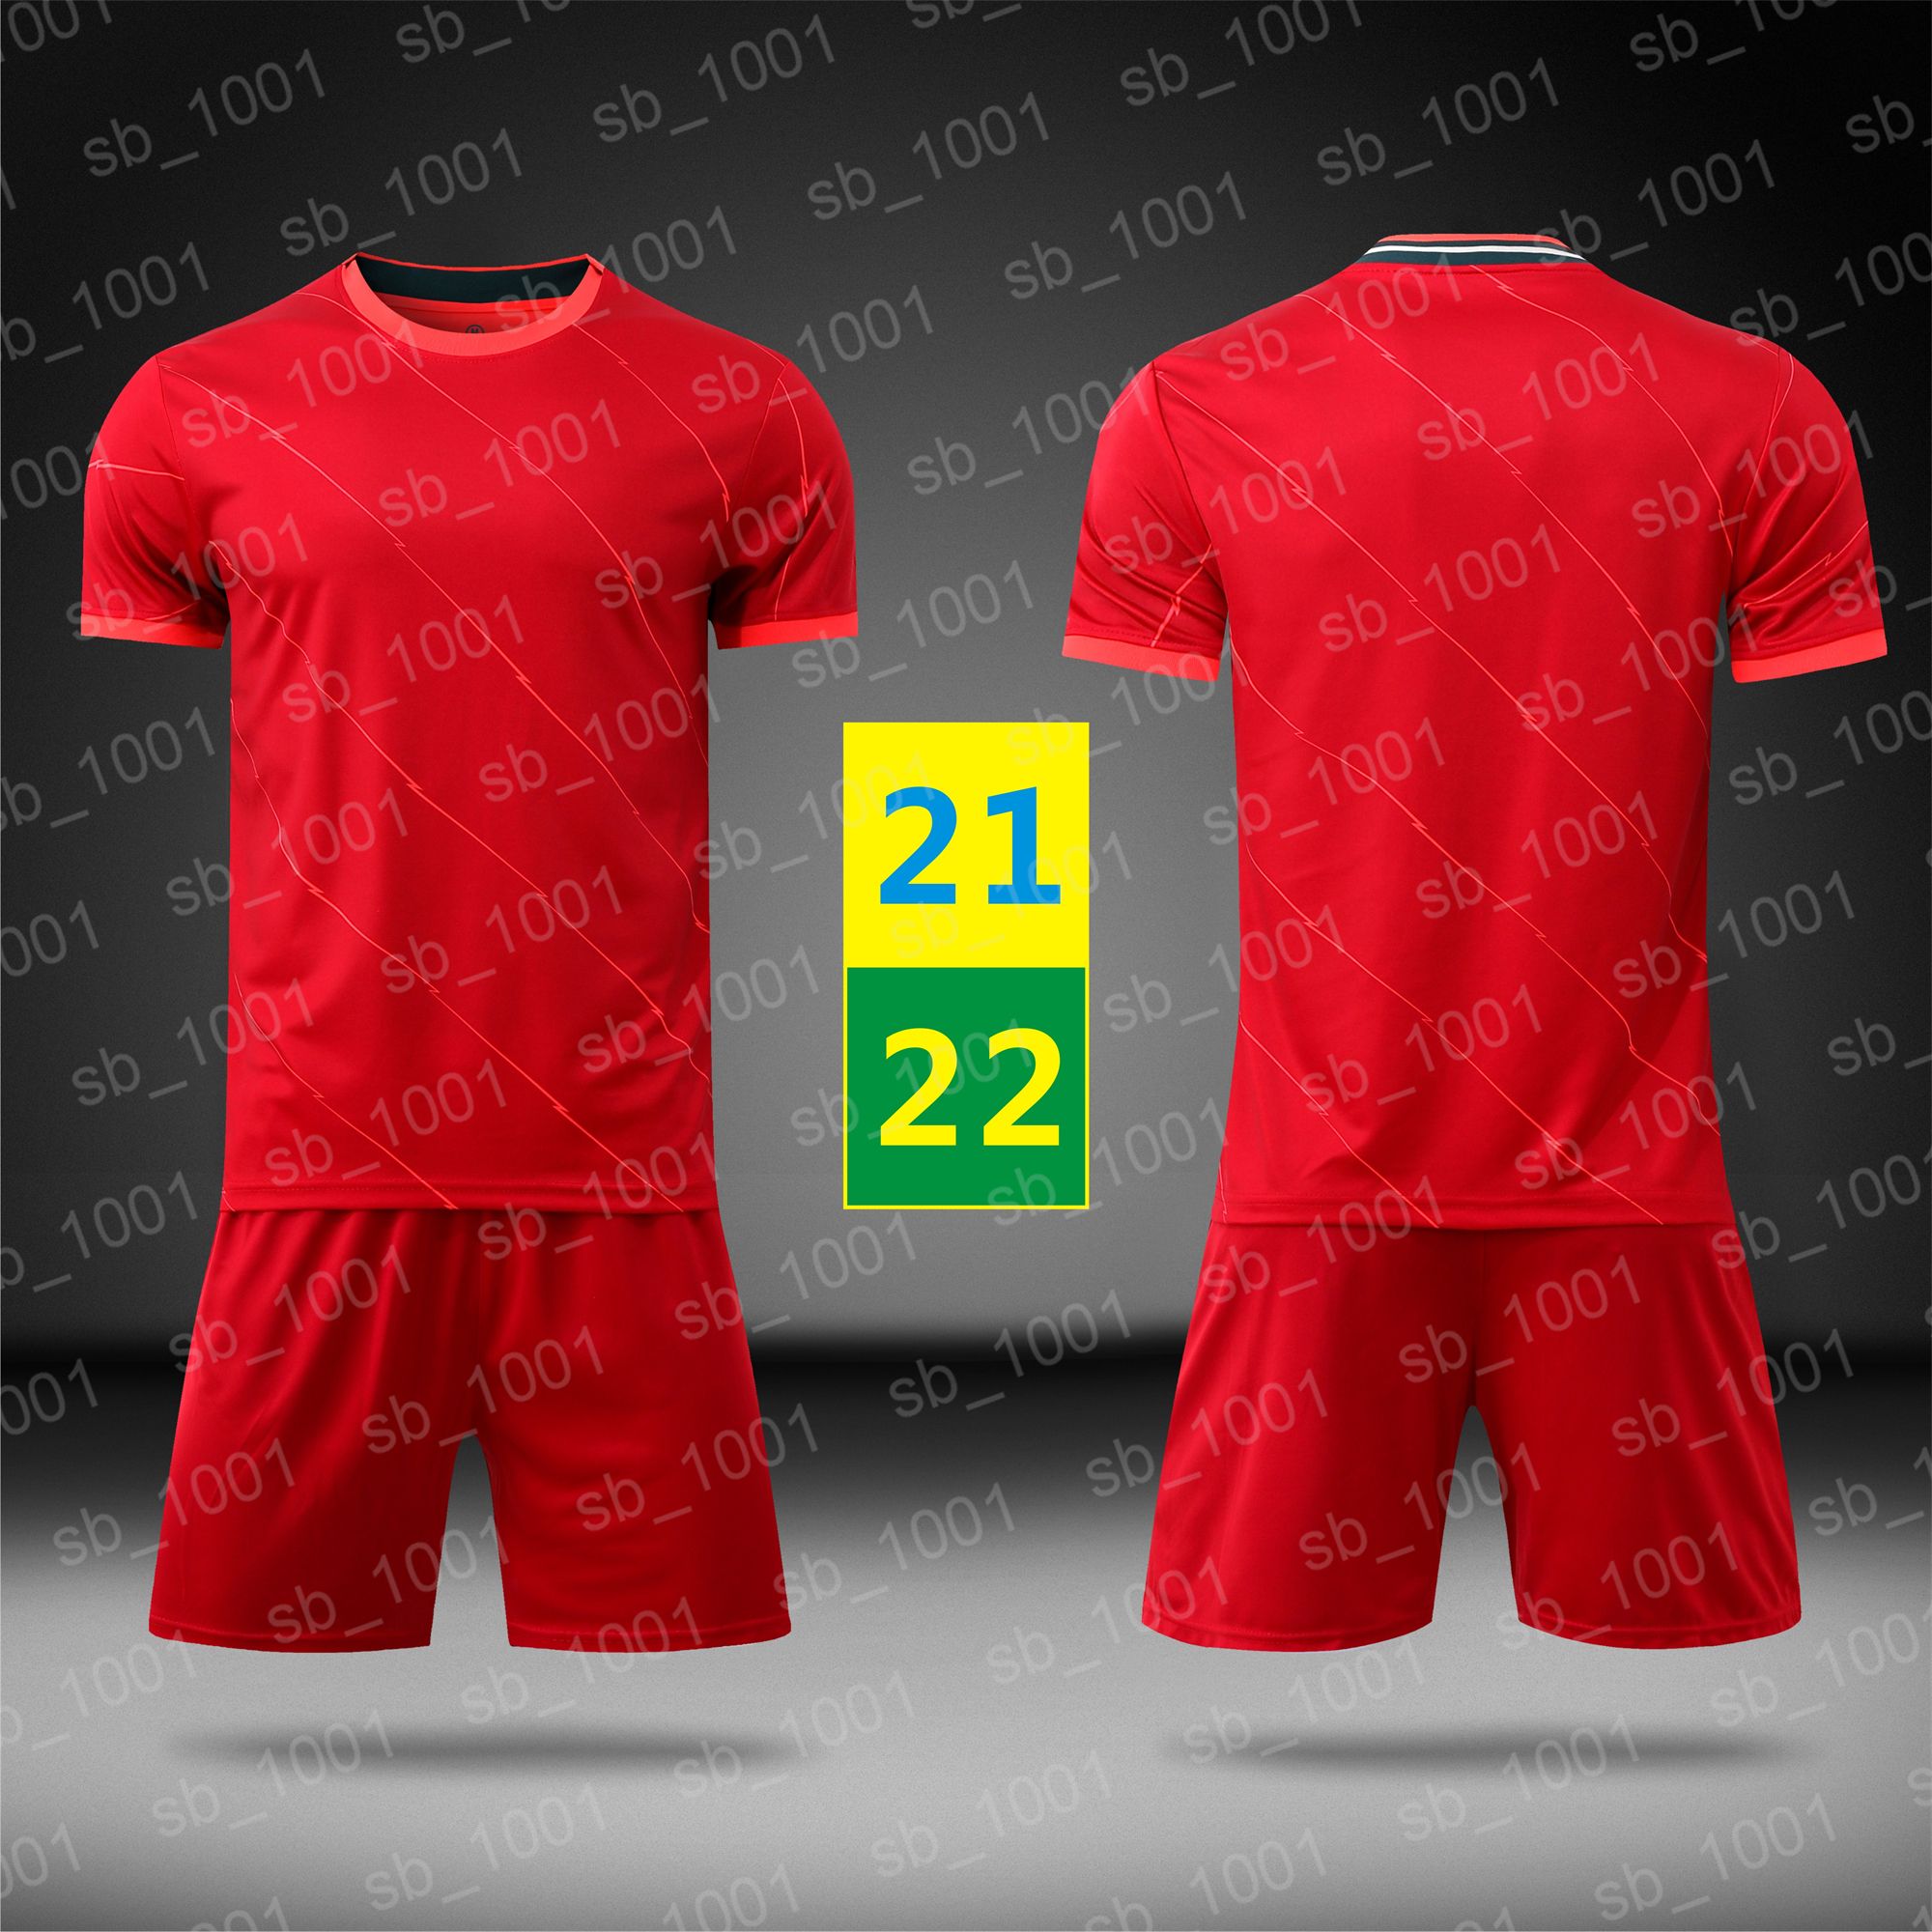 우리의 빠른 21 22 축구 유저 축구 퀵 드라이 레드 짧은 소매 홈 유니폼 망 스포츠 실행 어린이 유니폼 어린이 훈련 T 셔츠 2021 2022 로고 # LWPZ-21B1